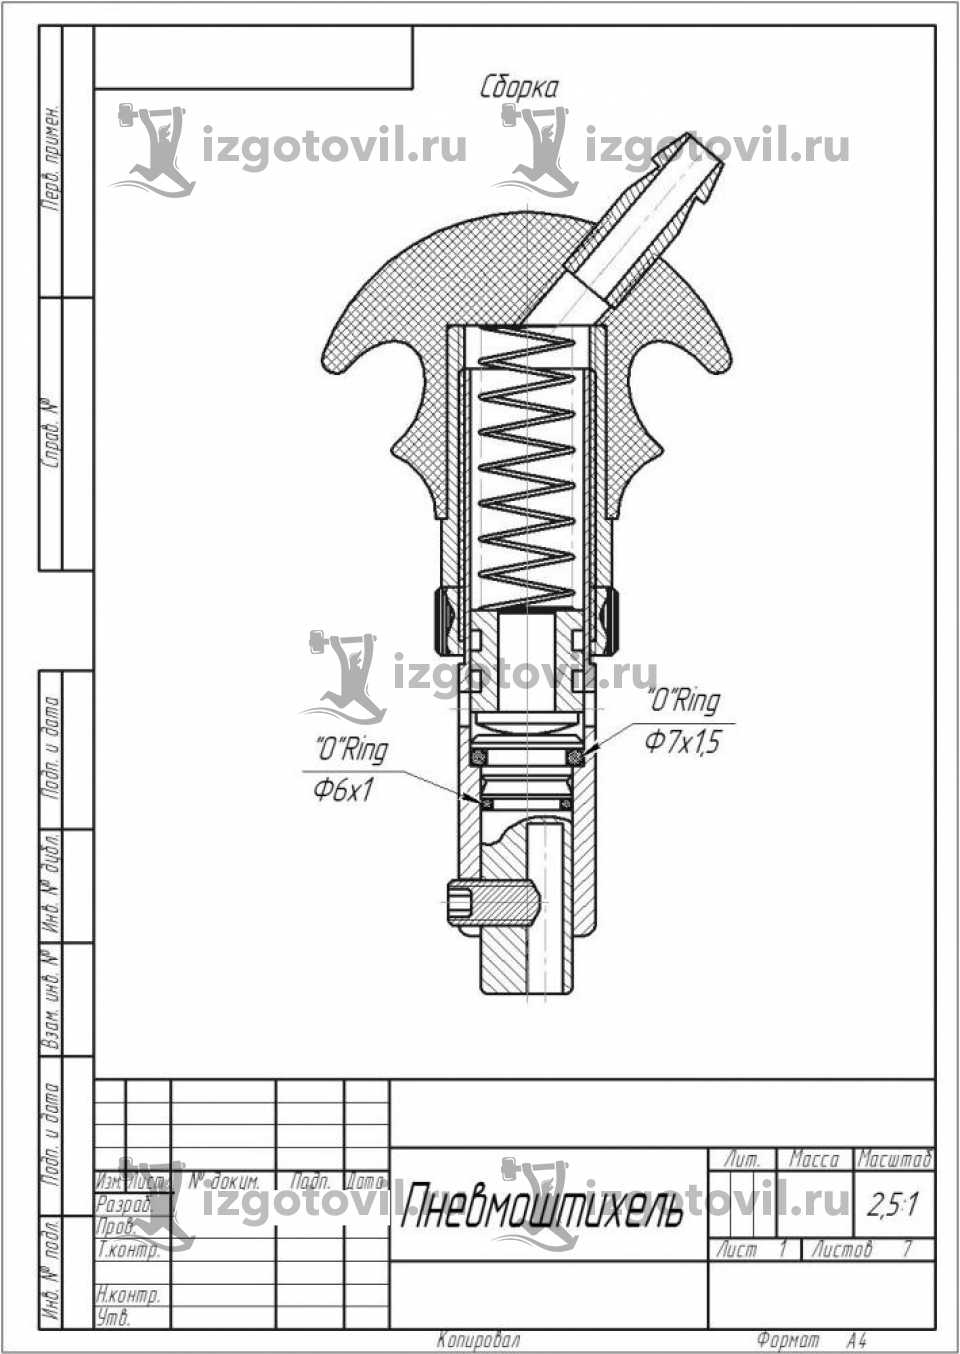 Изготовление деталей по чертежам - изготовление пневмоинструмента